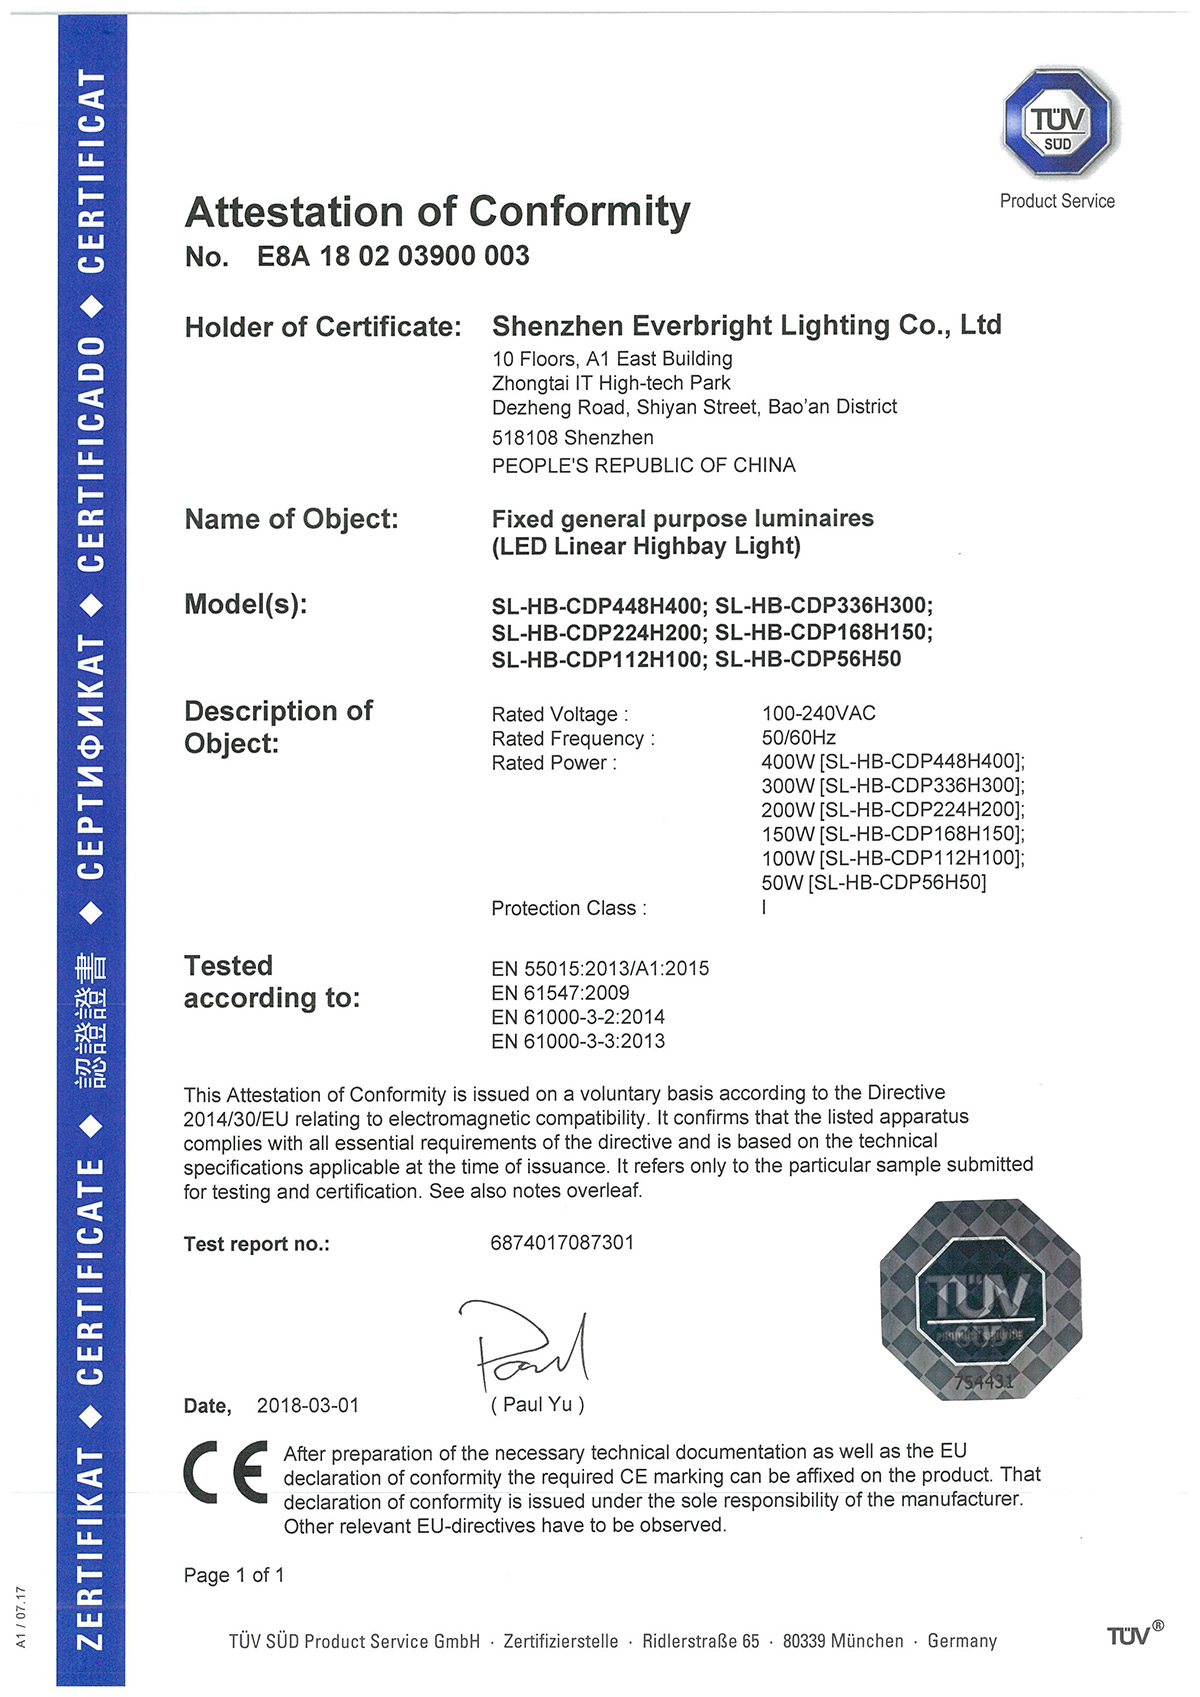 TUV EMC Certificates